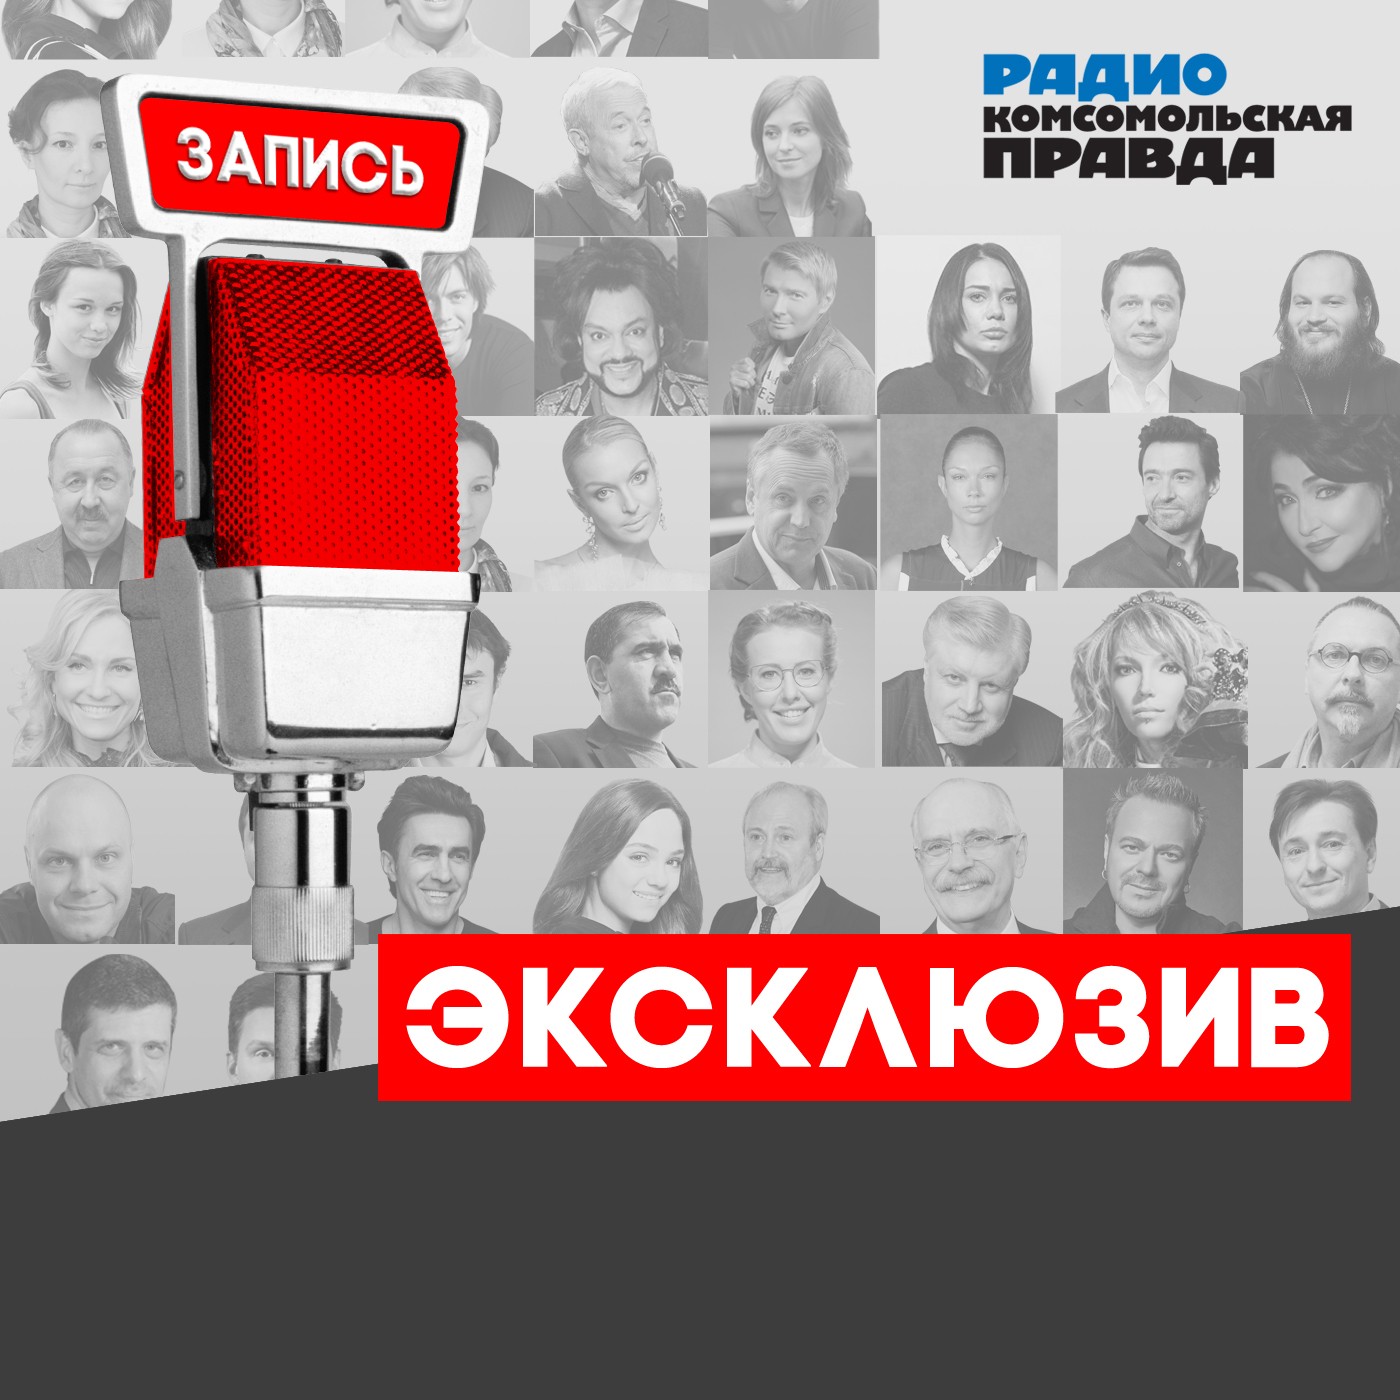 Радио «Комсомольская правда» "Накануне 45-летия чувствую себя на 19!"